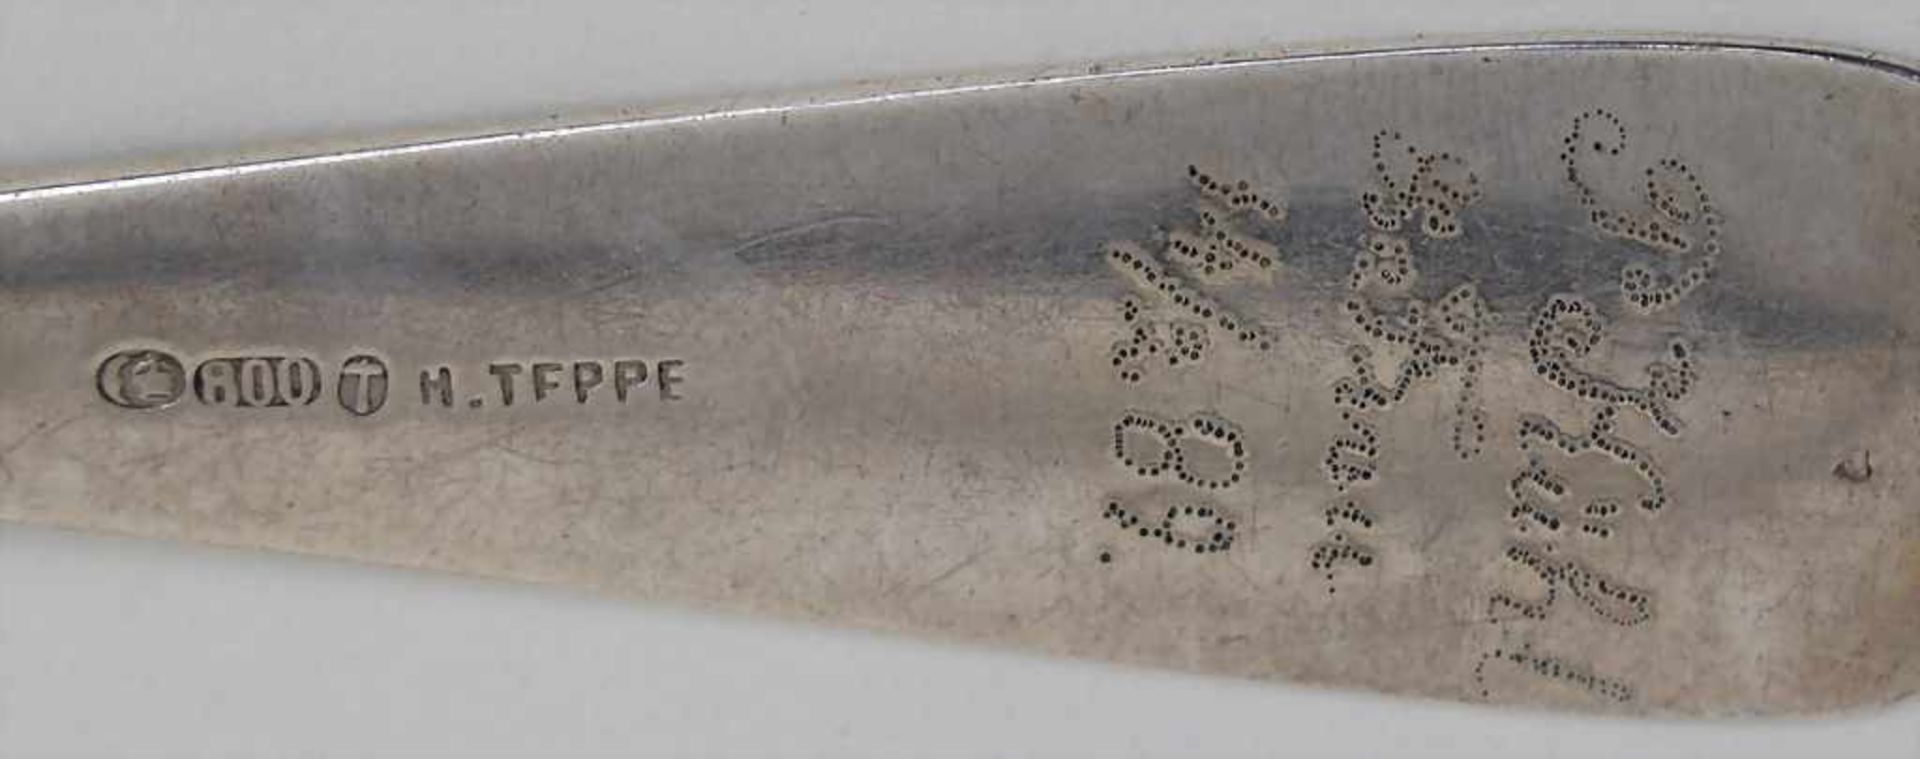 6 Löffel / 6 silver spoons, deutsch, 1860-1890Material: Silber 800,Punzierung: untersch. Punzen - Image 3 of 4